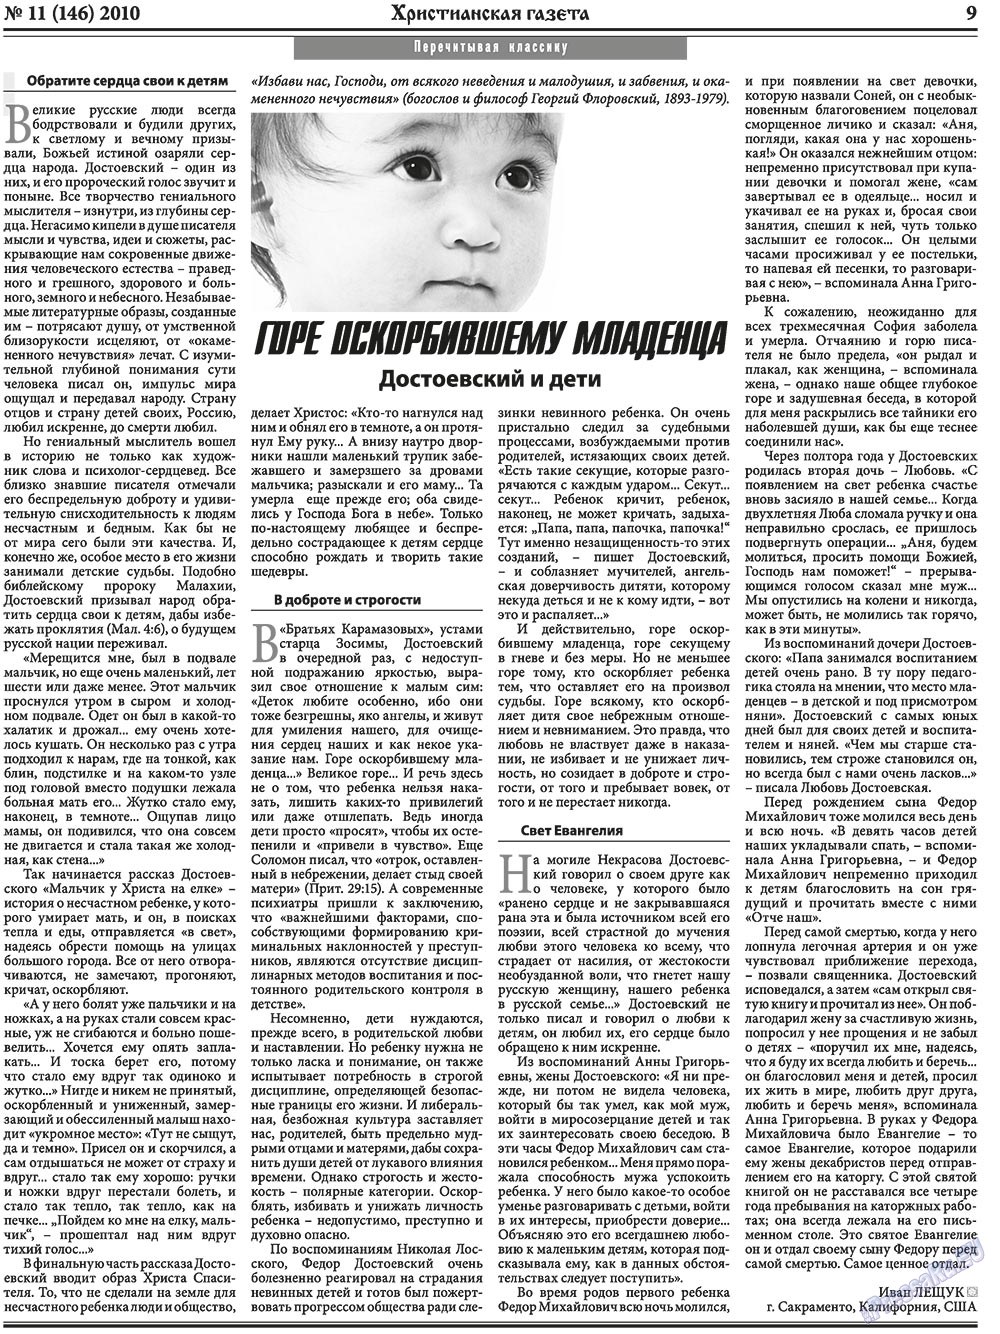 Христианская газета, газета. 2010 №11 стр.9